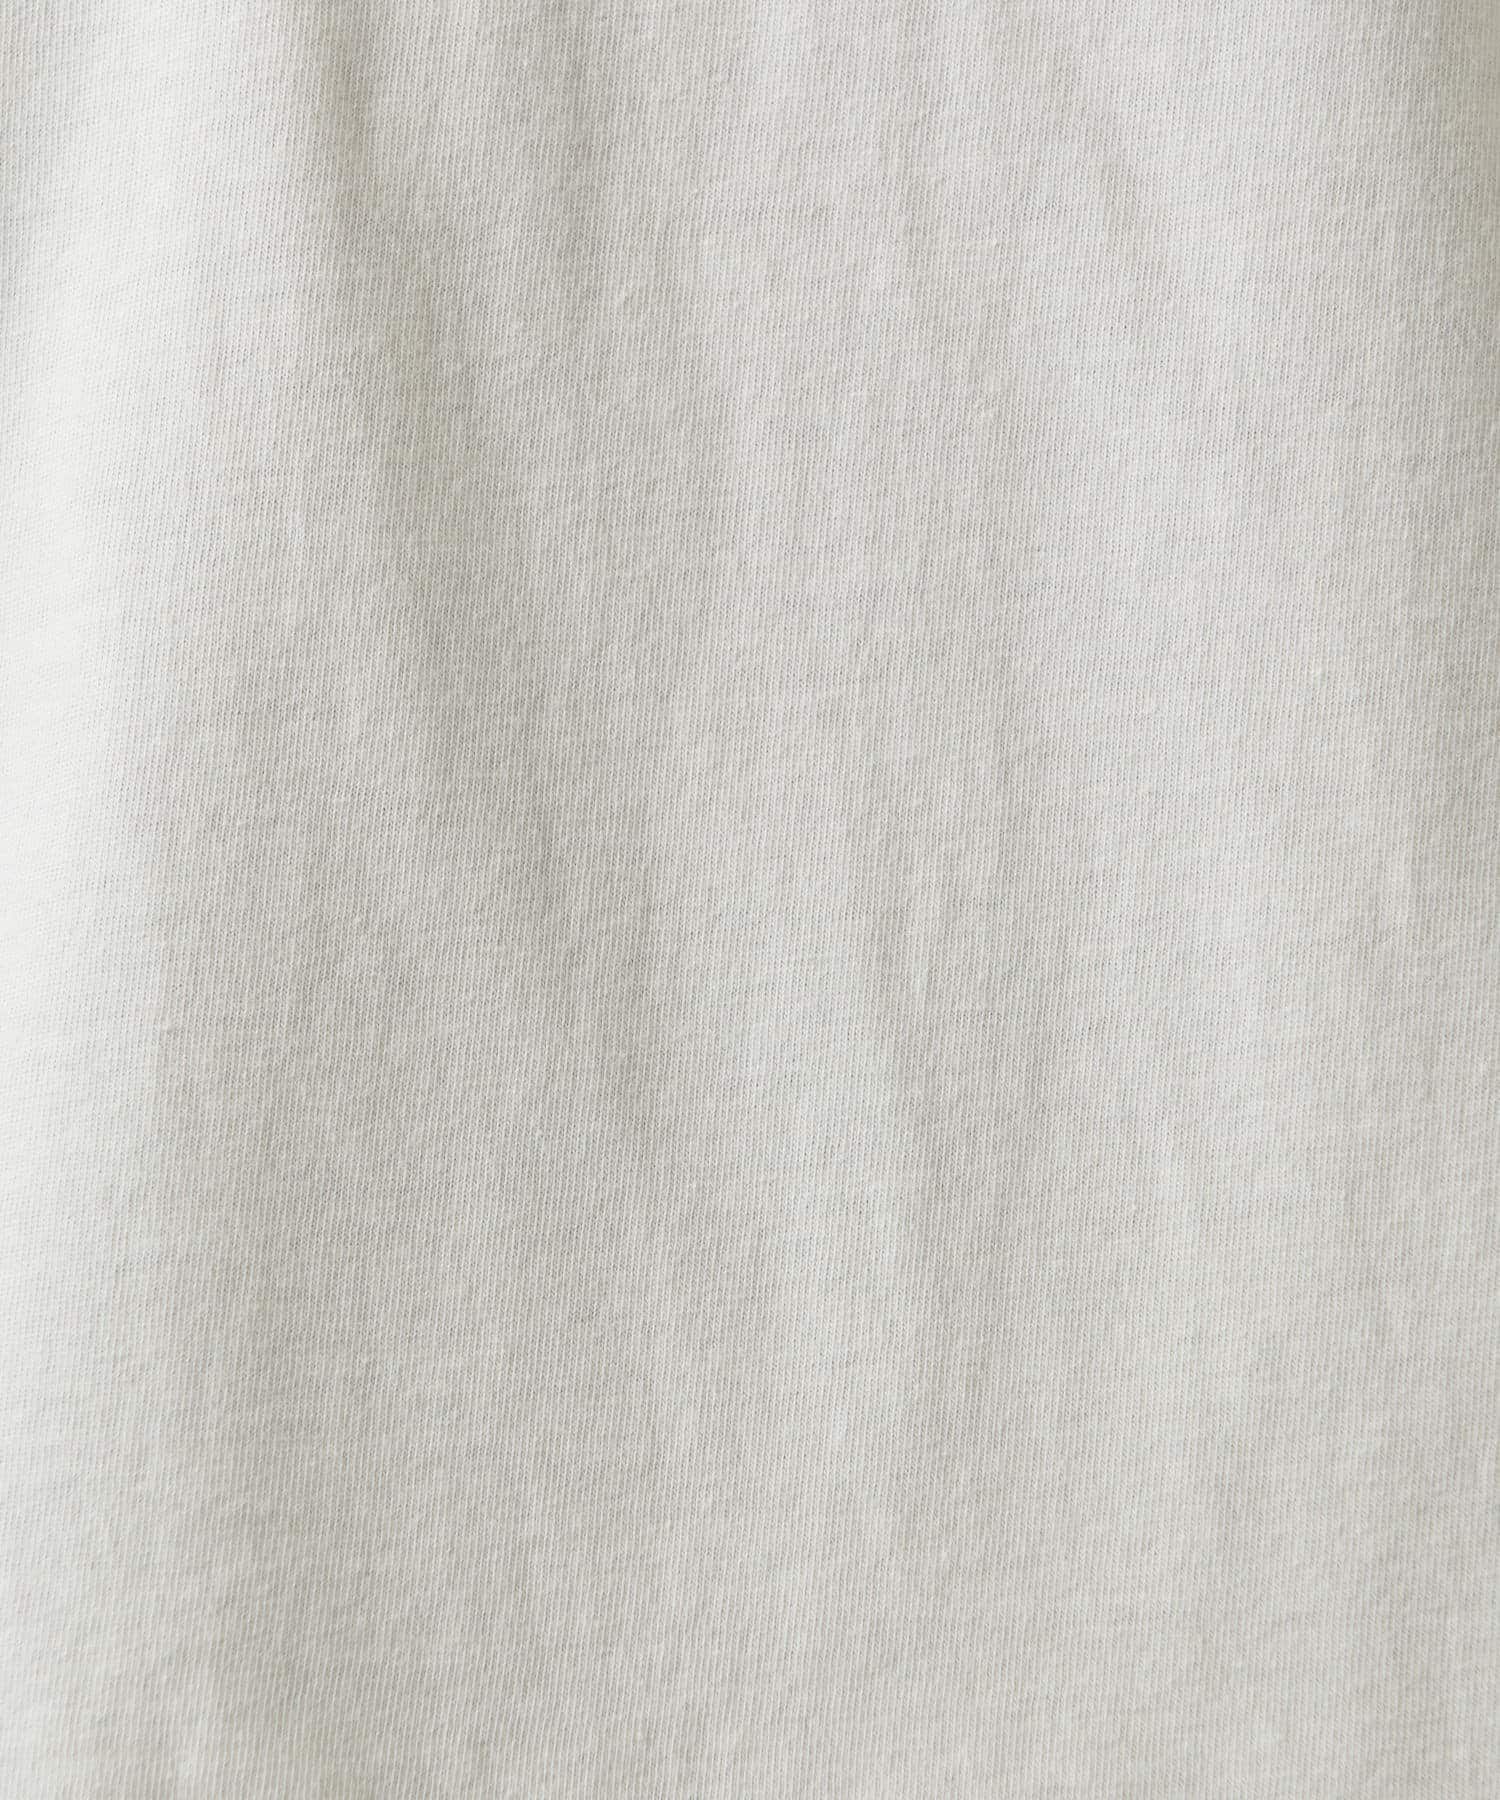 COLLAGE GALLARDAGALANTE(コラージュ ガリャルダガランテ) 【ST.JHONES 3RD CLUB/セントジョーンズサードクラブ】Tシャツ